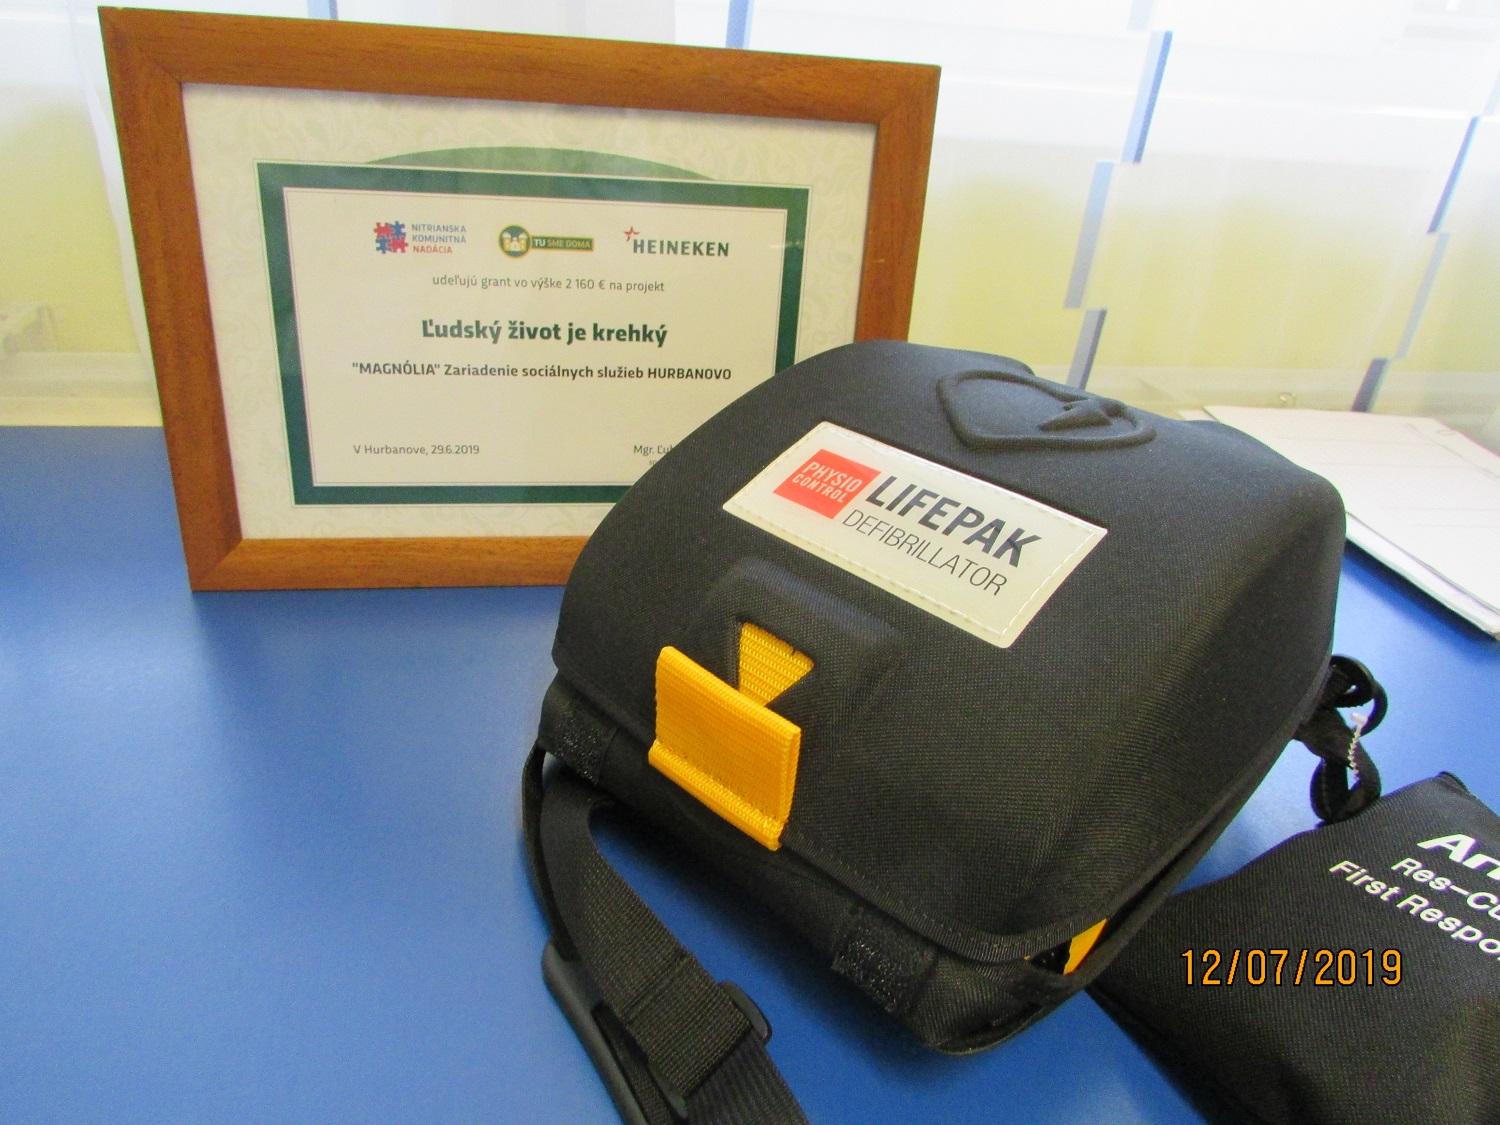 Vďaka grantu „MAGNÓLIA“ Zariadenie sociálnych služieb Hurbanovo zabezpečilo AED - automatický externý defibrilátor pre potreby svojich 180 klientov. 